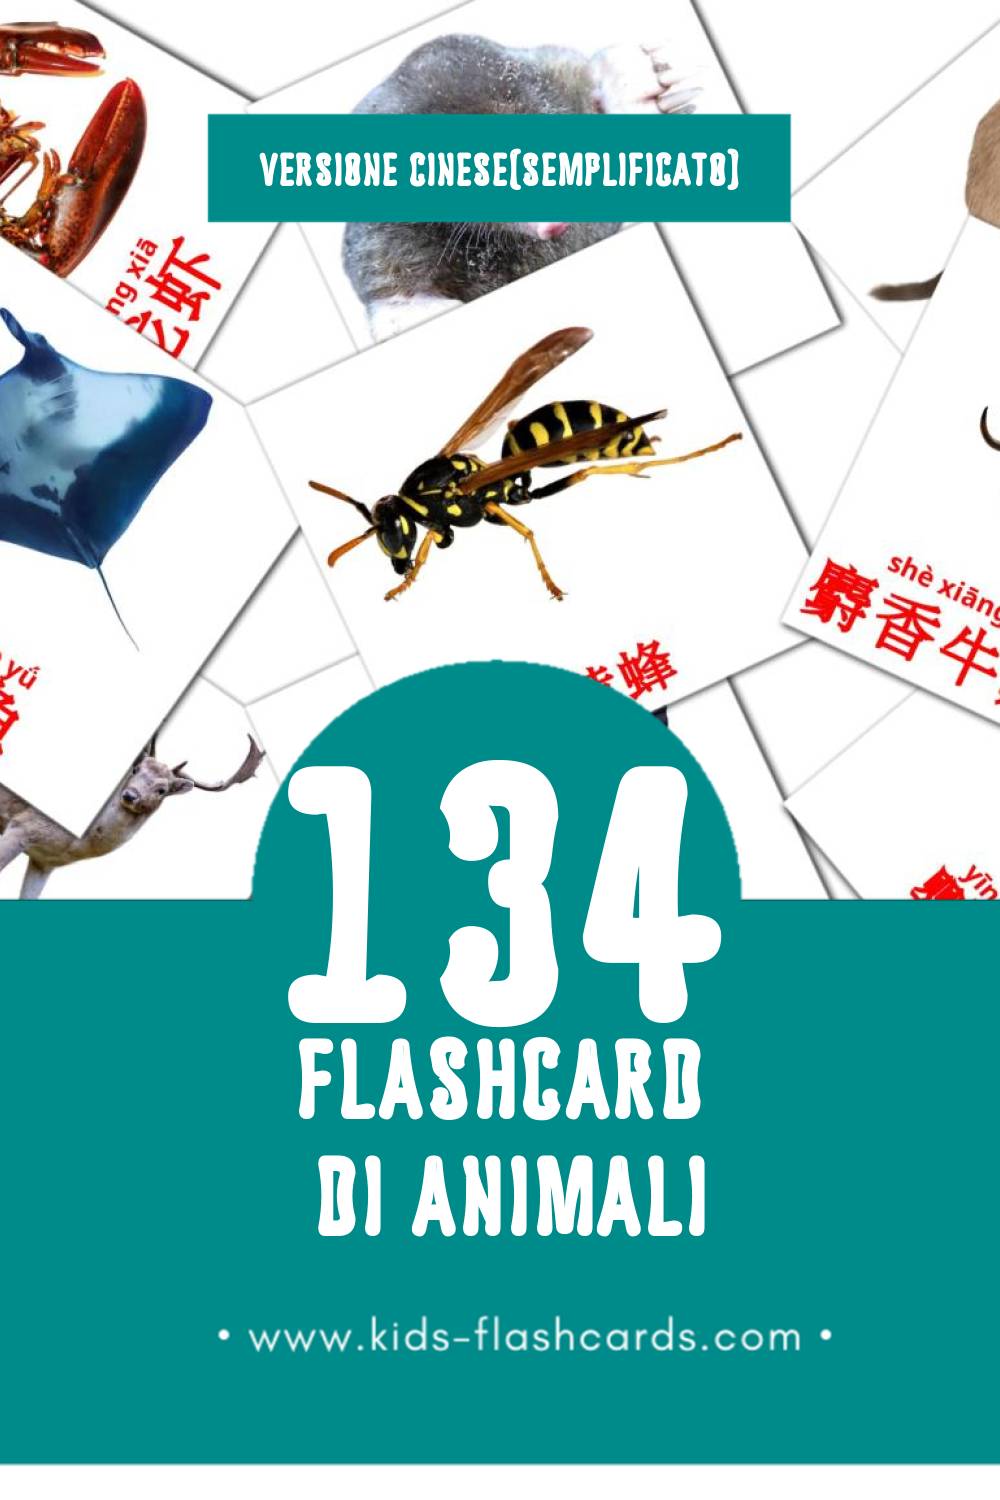 Schede visive sugli 动物 per bambini (134 schede in Cinese(semplificato))